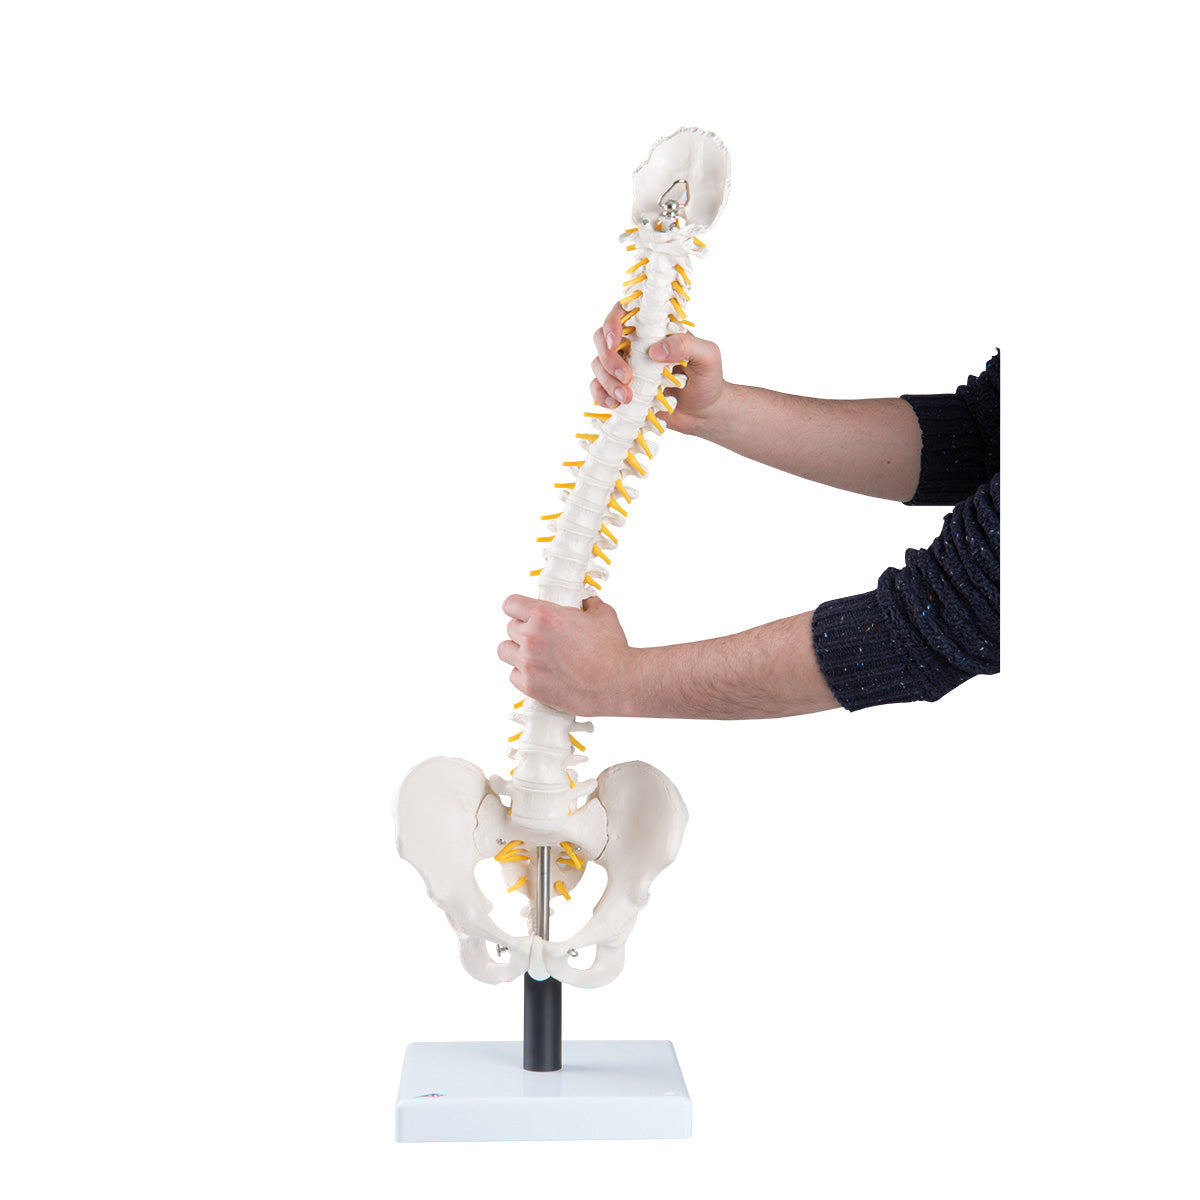 Flexibel modell av ryggraden med extra mjuka skivor, nerver etc. presenterat på stativ